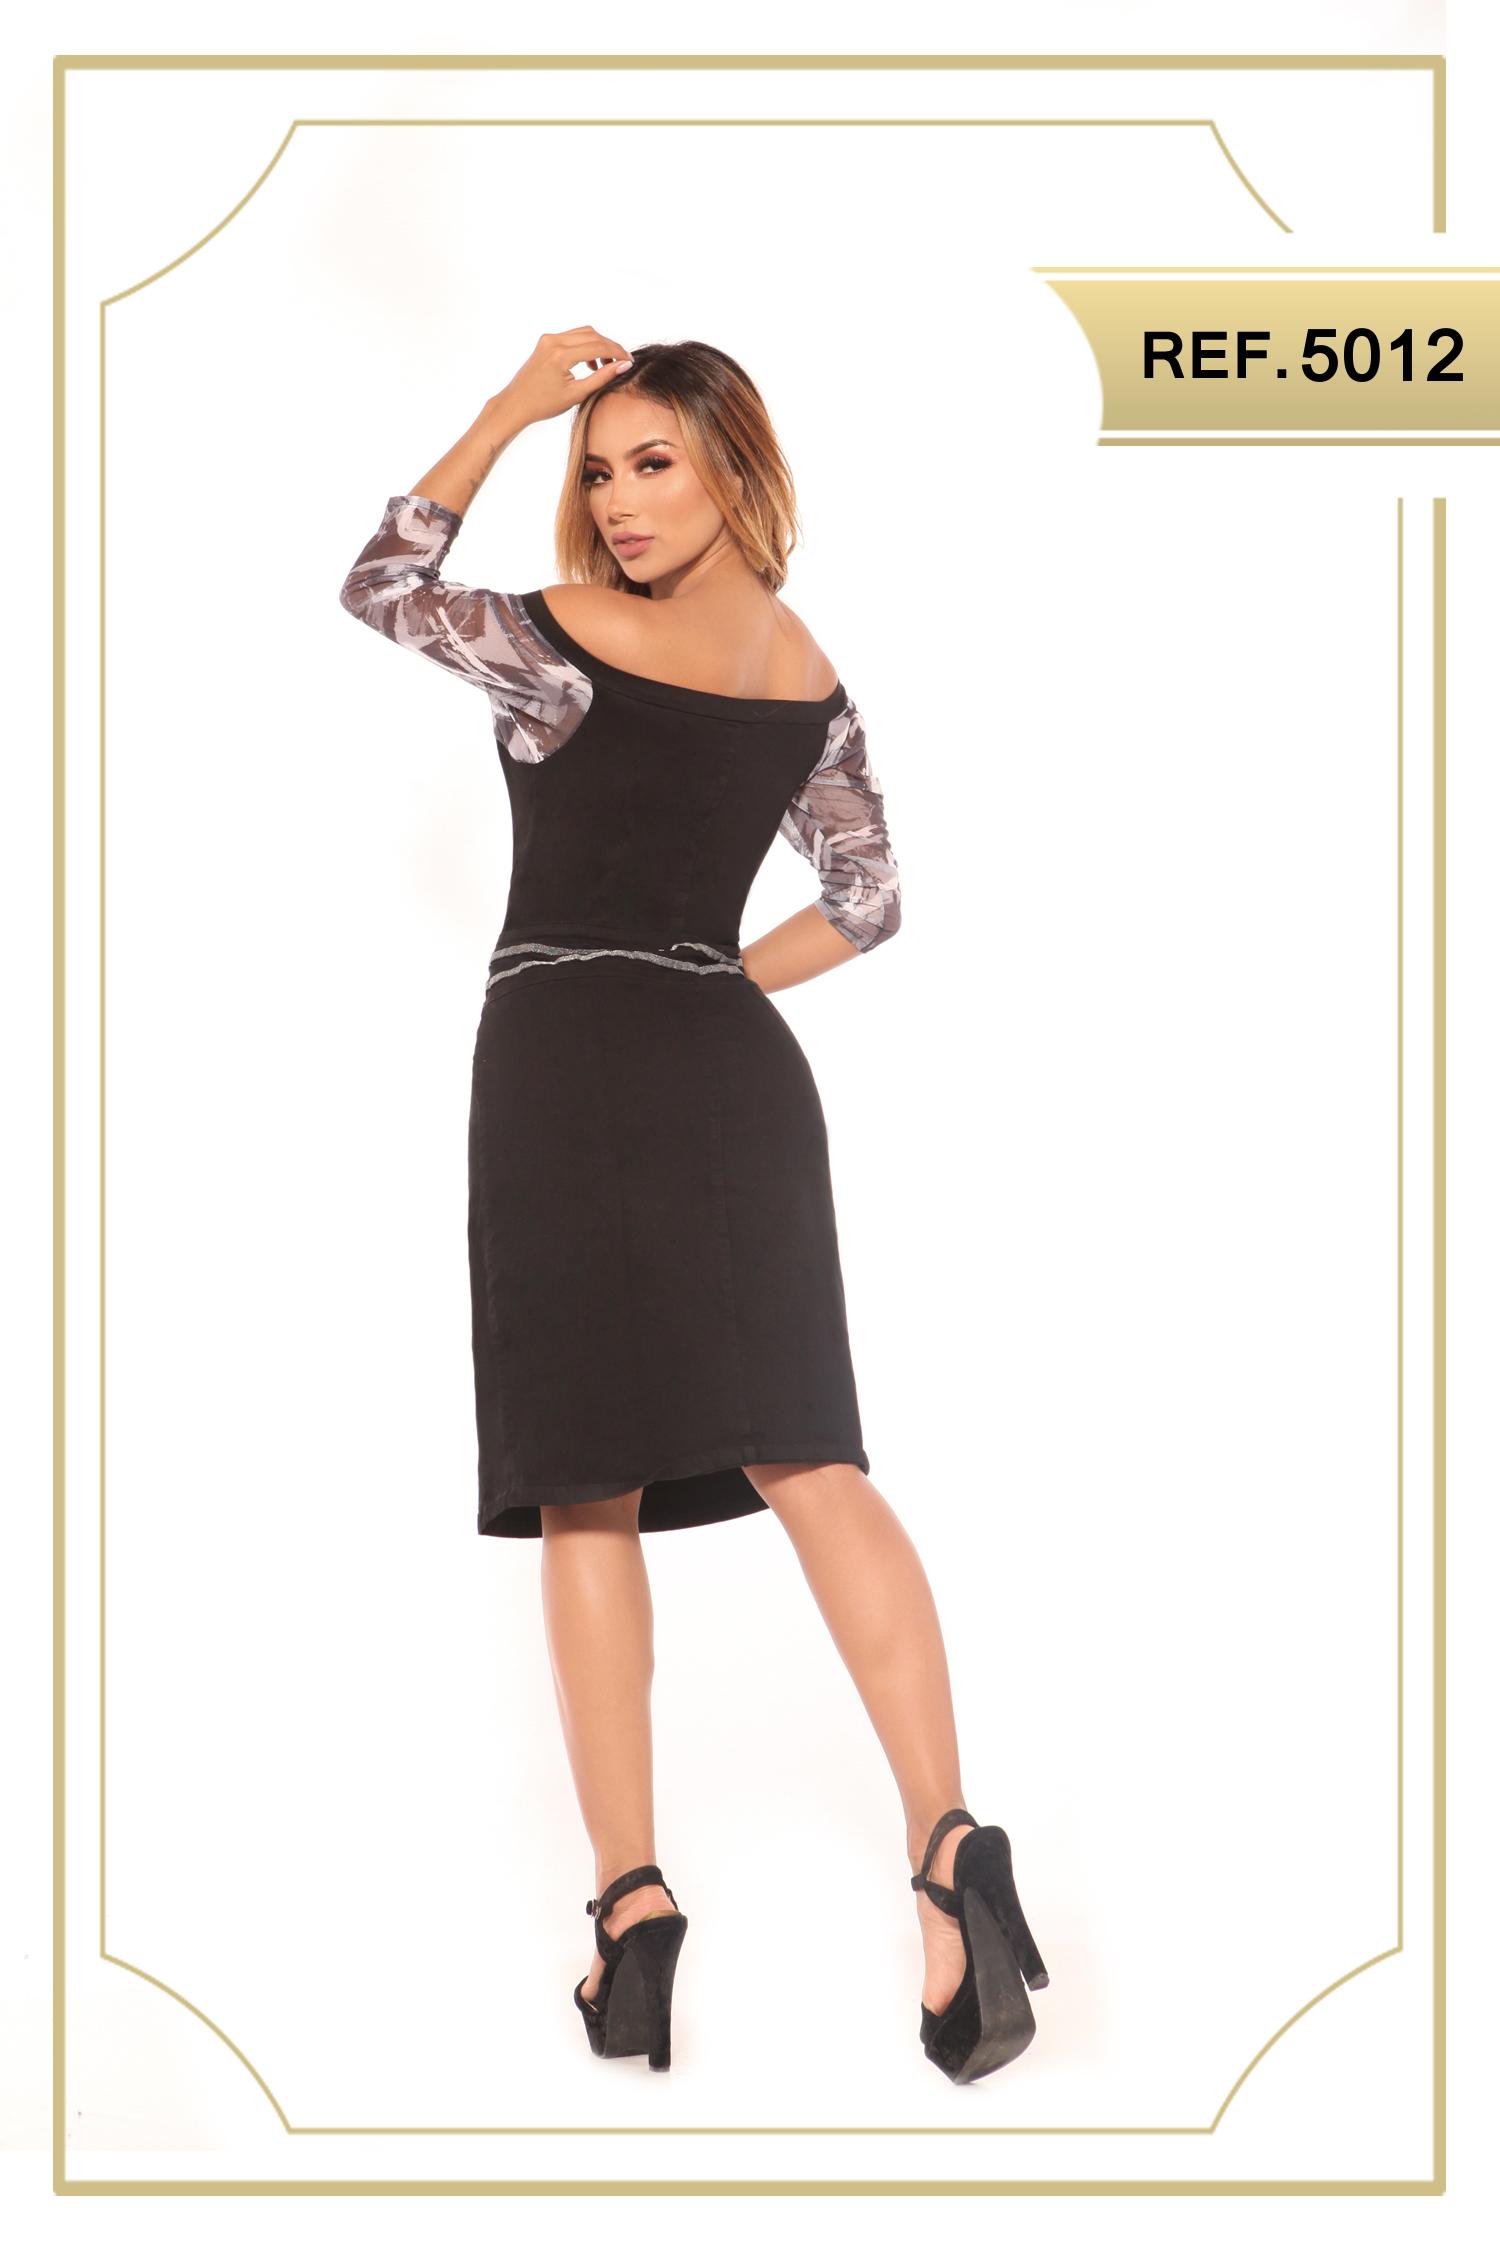 Comprar Vestido Colombiano de Jean color negro, con cremallera frontal, estilo falda de media pierna, con apertura decorativo en una pierna. Mangas hasta el antebrazo con decorado floral.